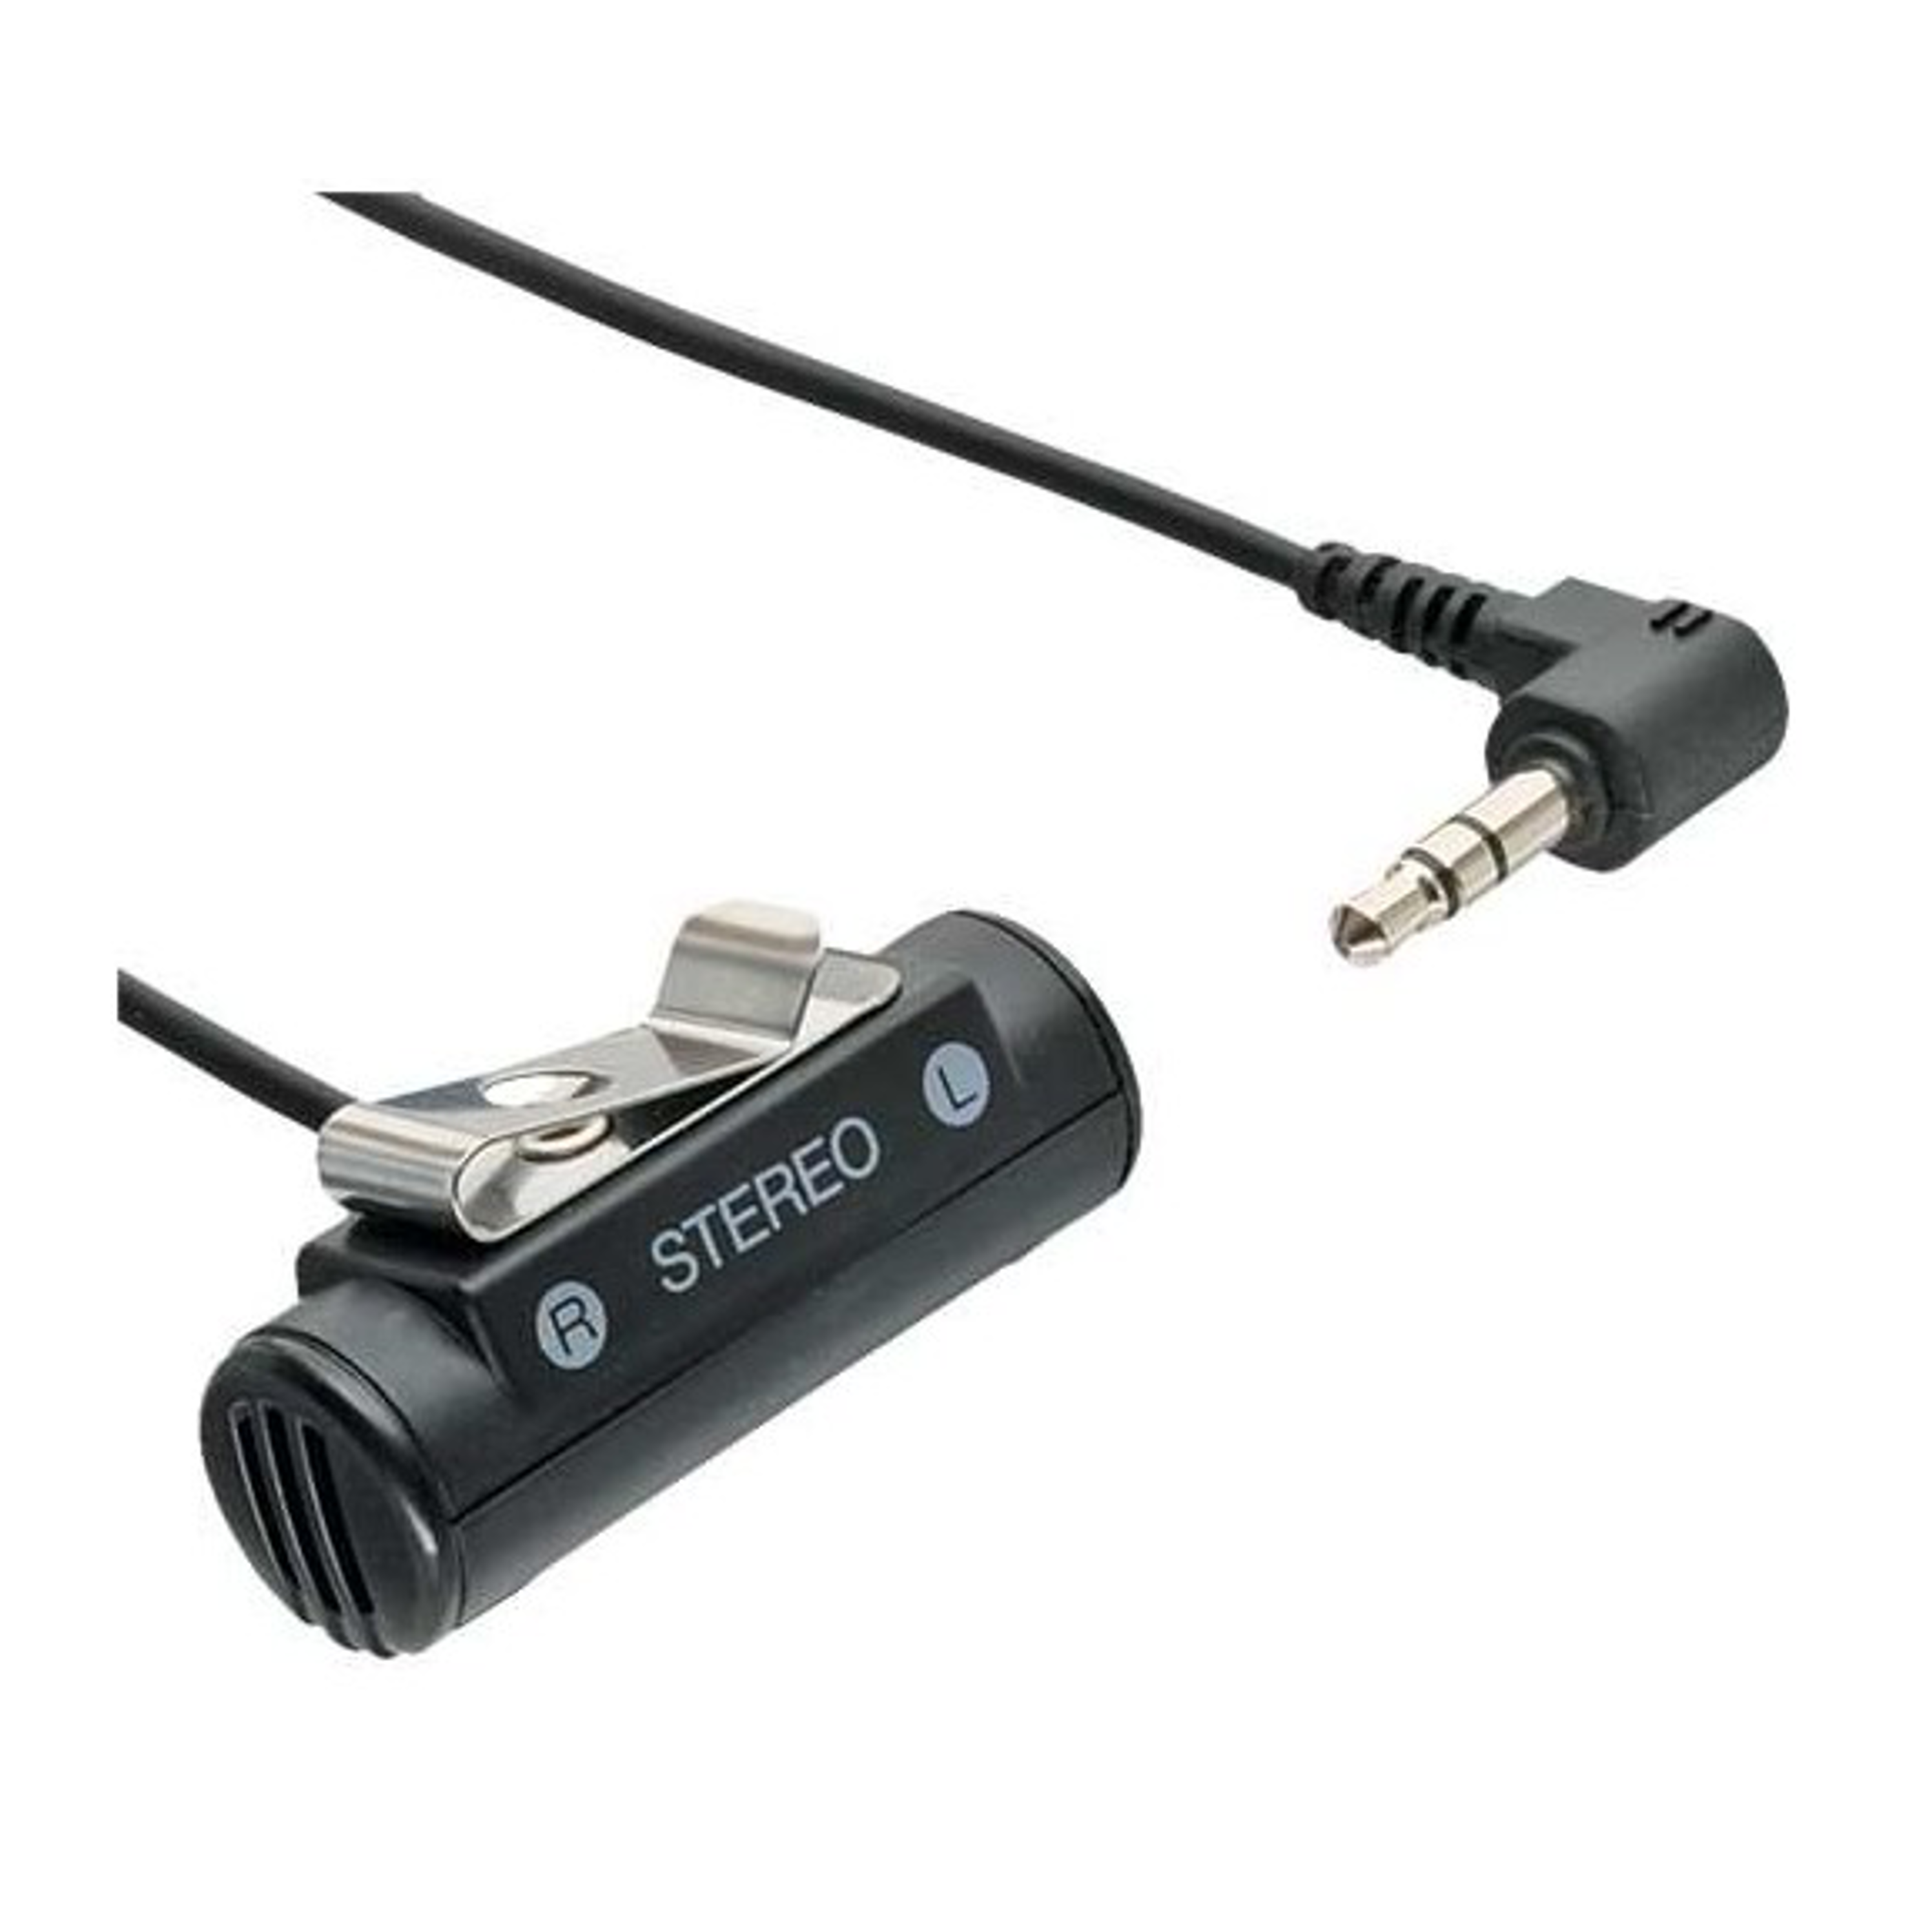 Stereo Diktiergerät, Clip-on Schwarz Mikrofon LFH91740 PHILIPS